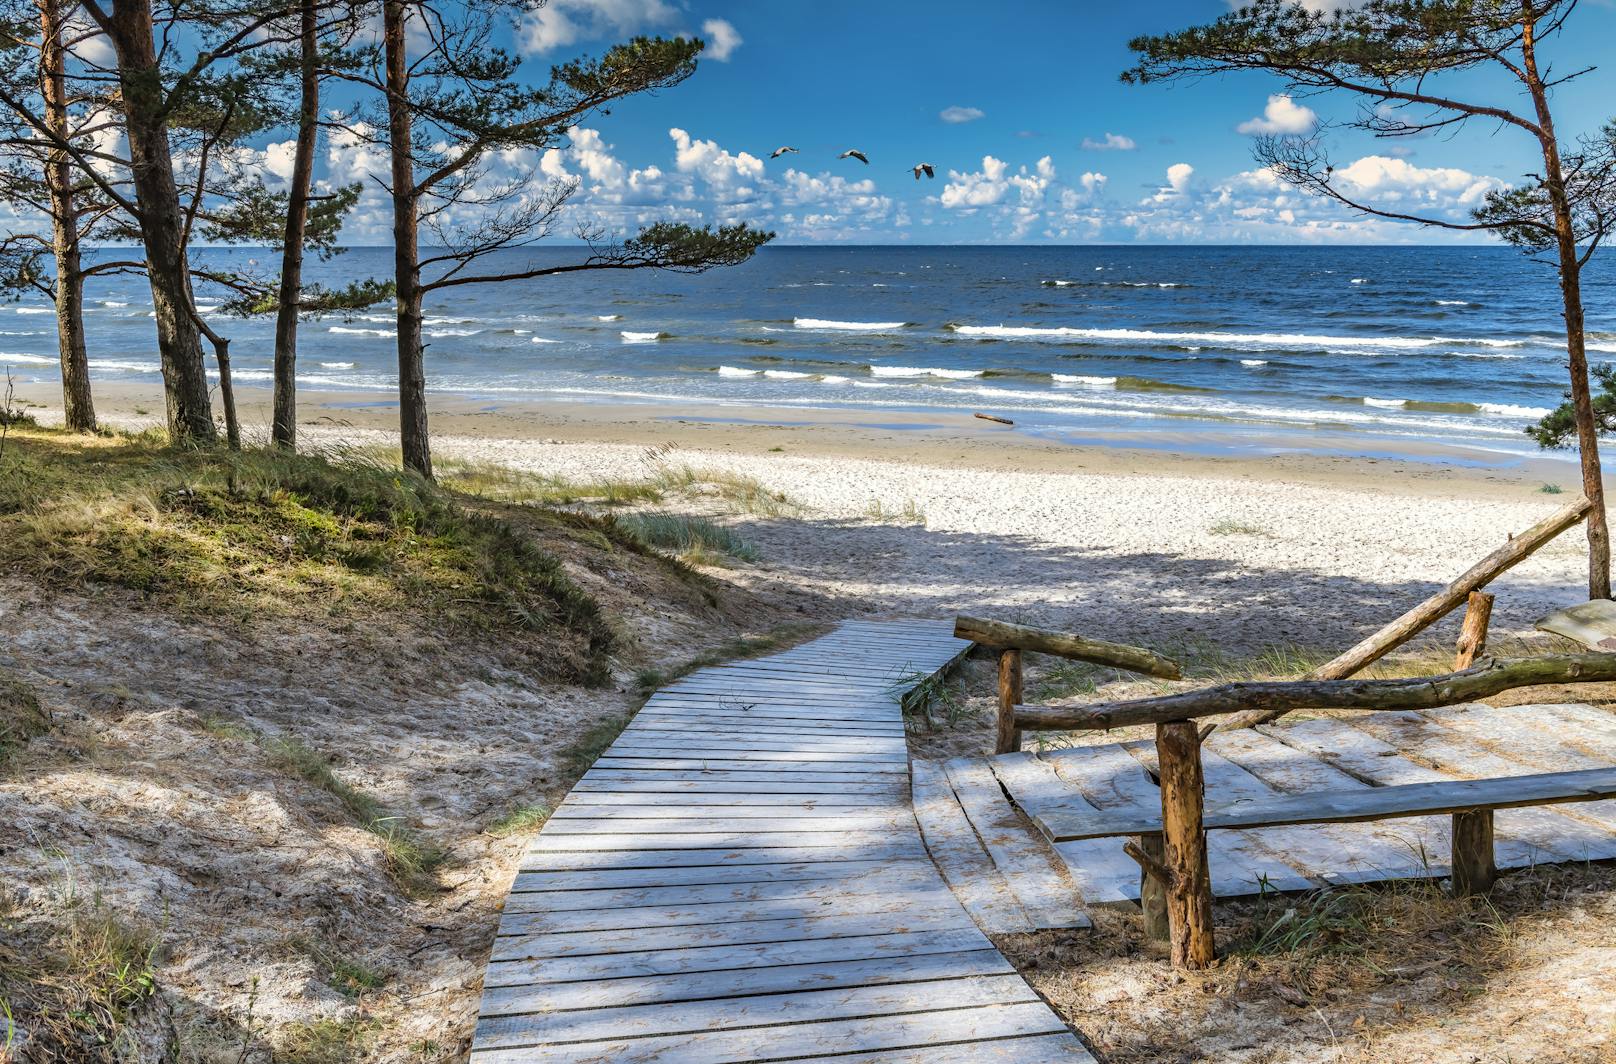 <strong>8. Jurmala, Lettland:</strong> Wenn es um den Sommer- und Strandurlaub geht, ist Lettland vielleicht nicht gerade das erste Reiseziel, das einem in den Sinn kommt. Aber es könnte&nbsp;in diesem Sommer genau das richtige für dich sein: In der Region Jurmala  gibt es 33 Kilometer Strand mit feinem Sand und zahlreichen Wellness-Hotels.&nbsp;Außerdem ist Lettland deutlich weniger als die meisten anderen europäischen Länder vom Coronavirus betroffen. Auch hier dürfen Urlauber wieder ab dem 1. Juli einreisen.